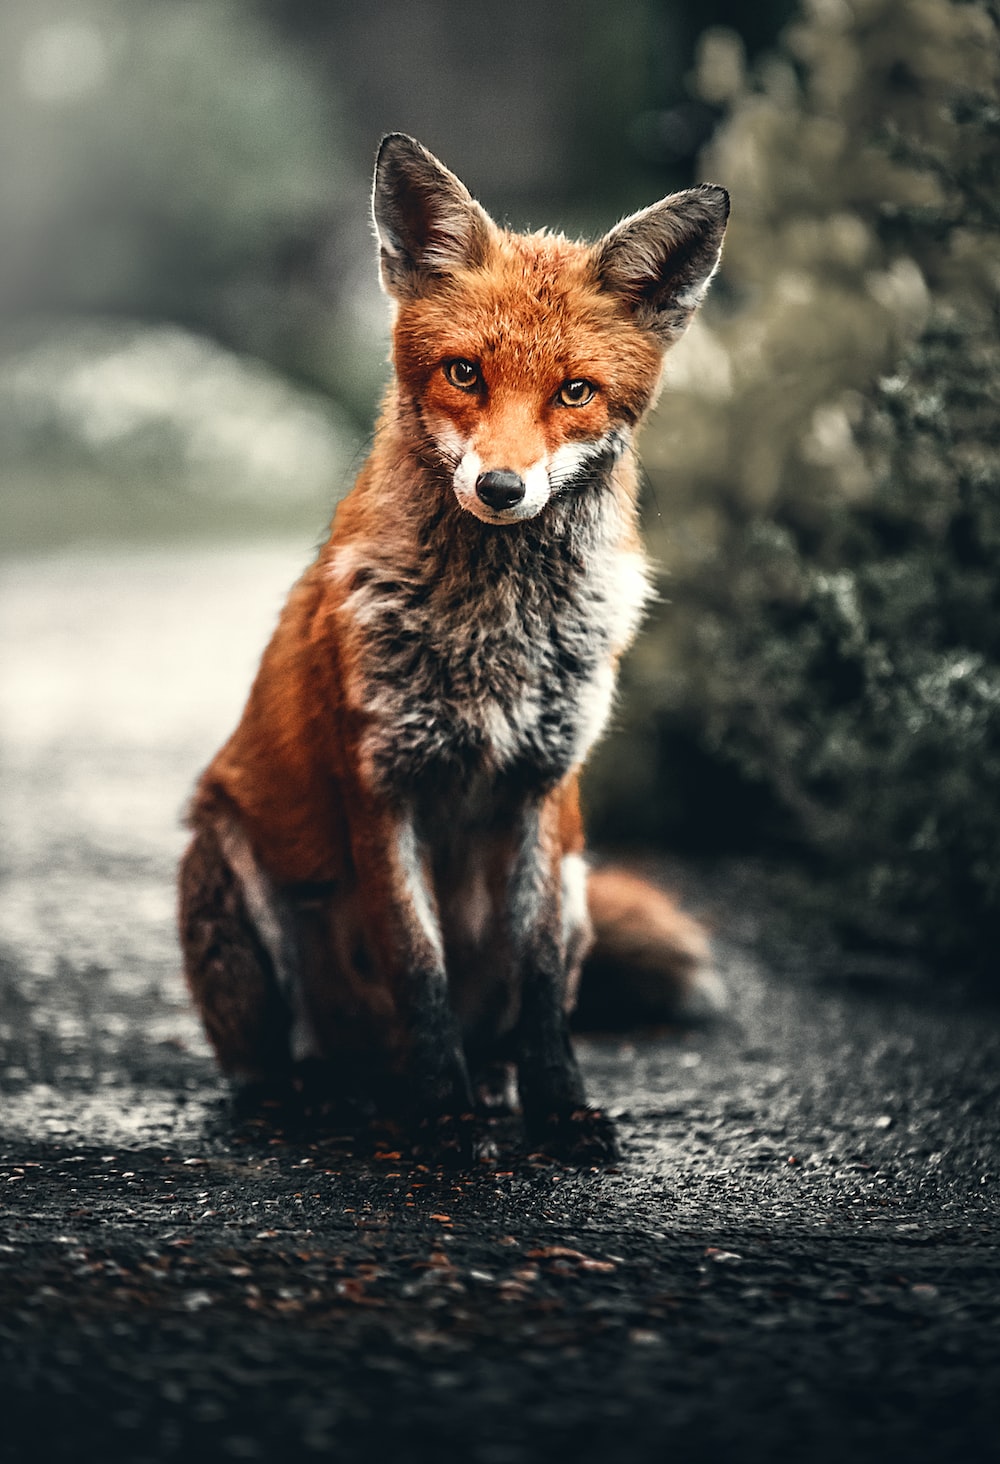 Orange and silver fox photo